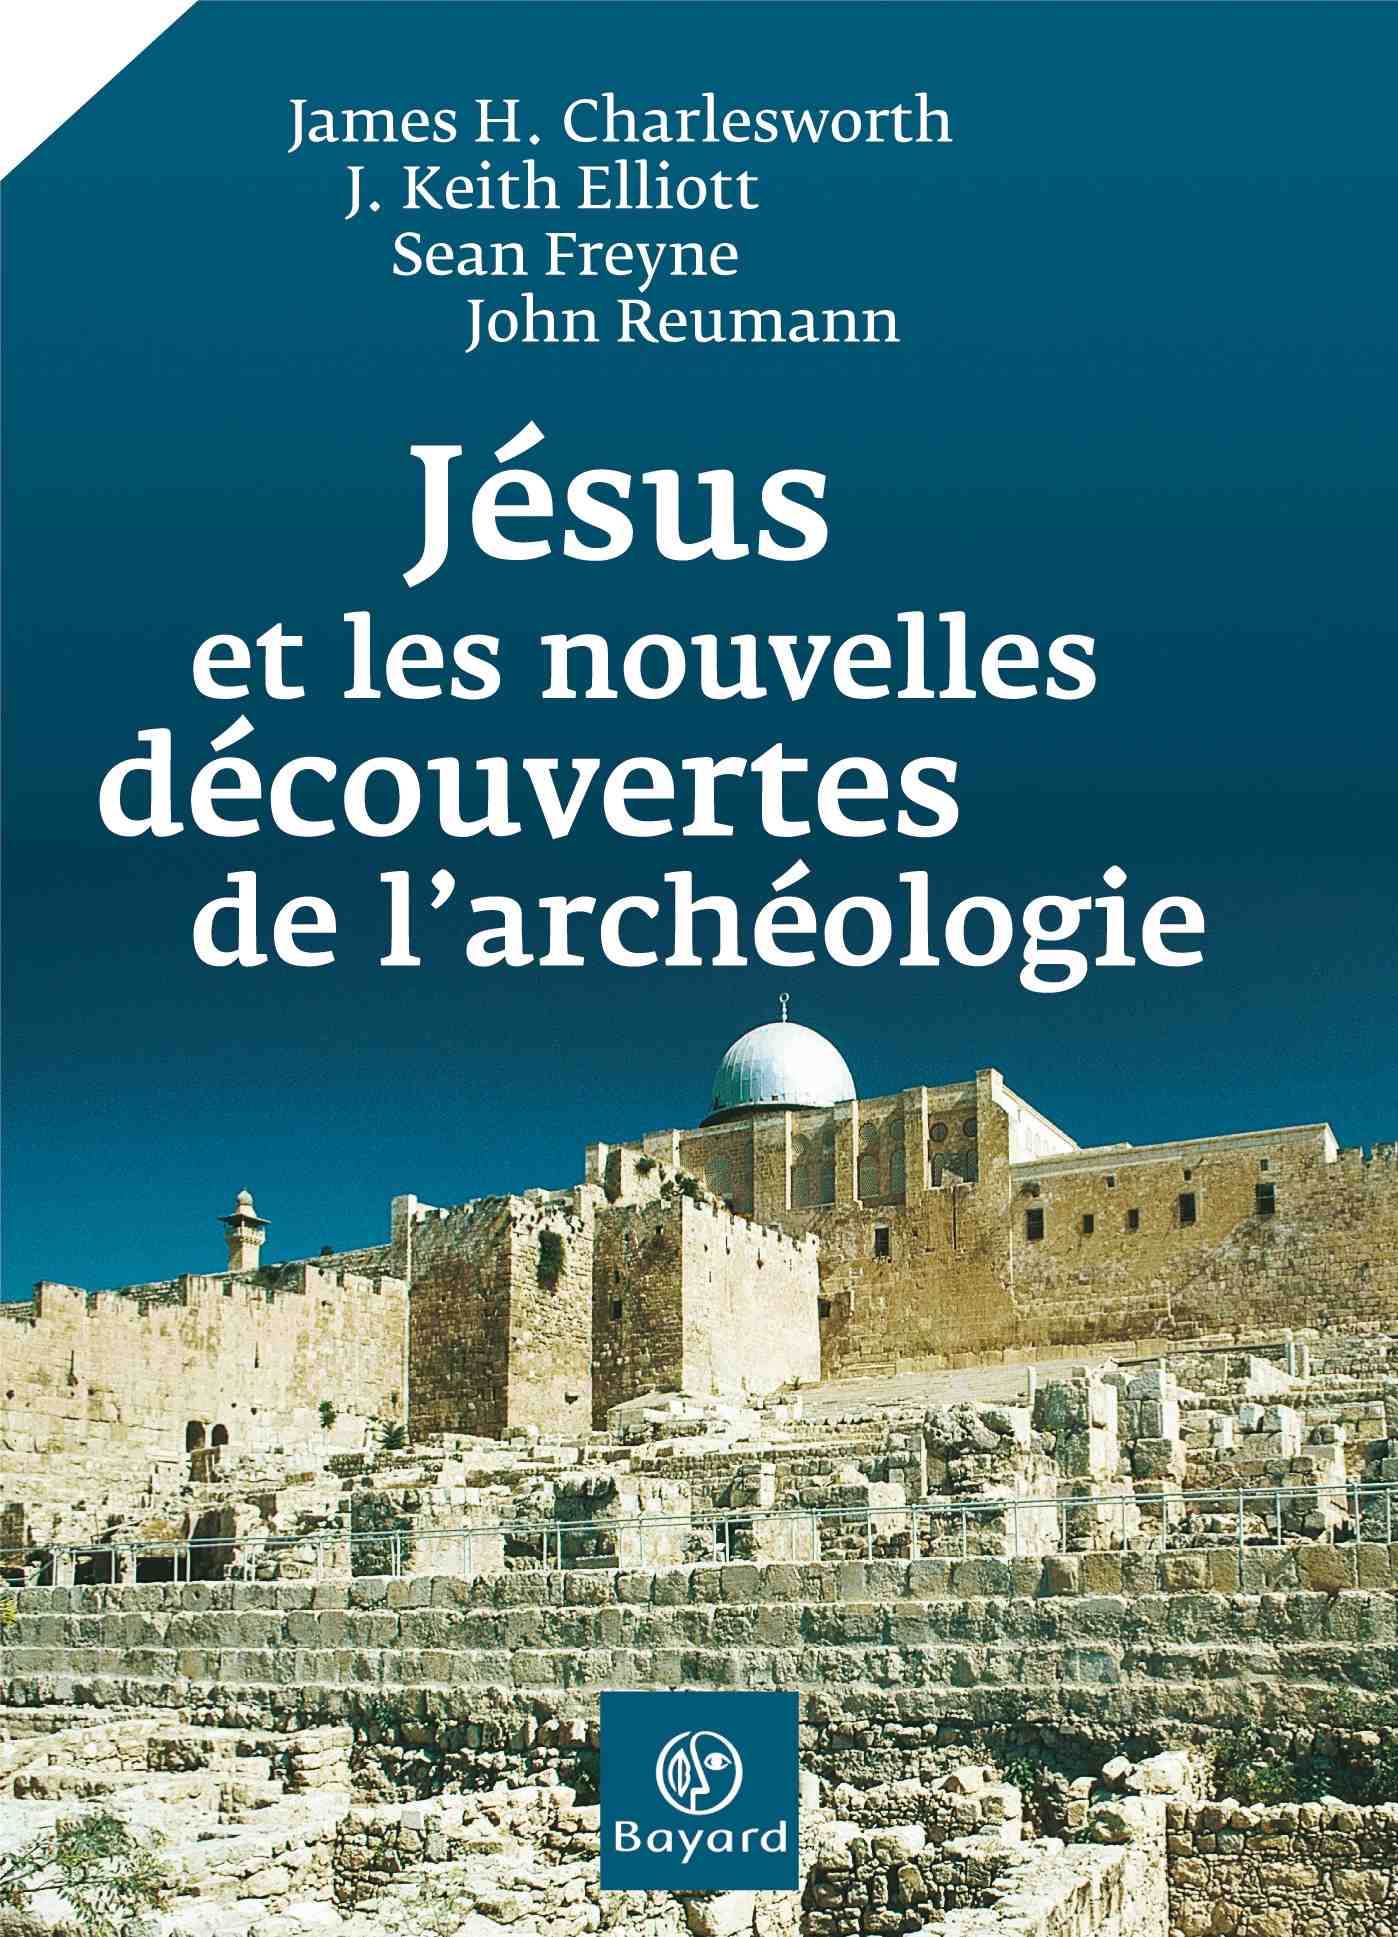 Jésus et les nouvelles découvertes de l'archéologie, 2007, 143 p.